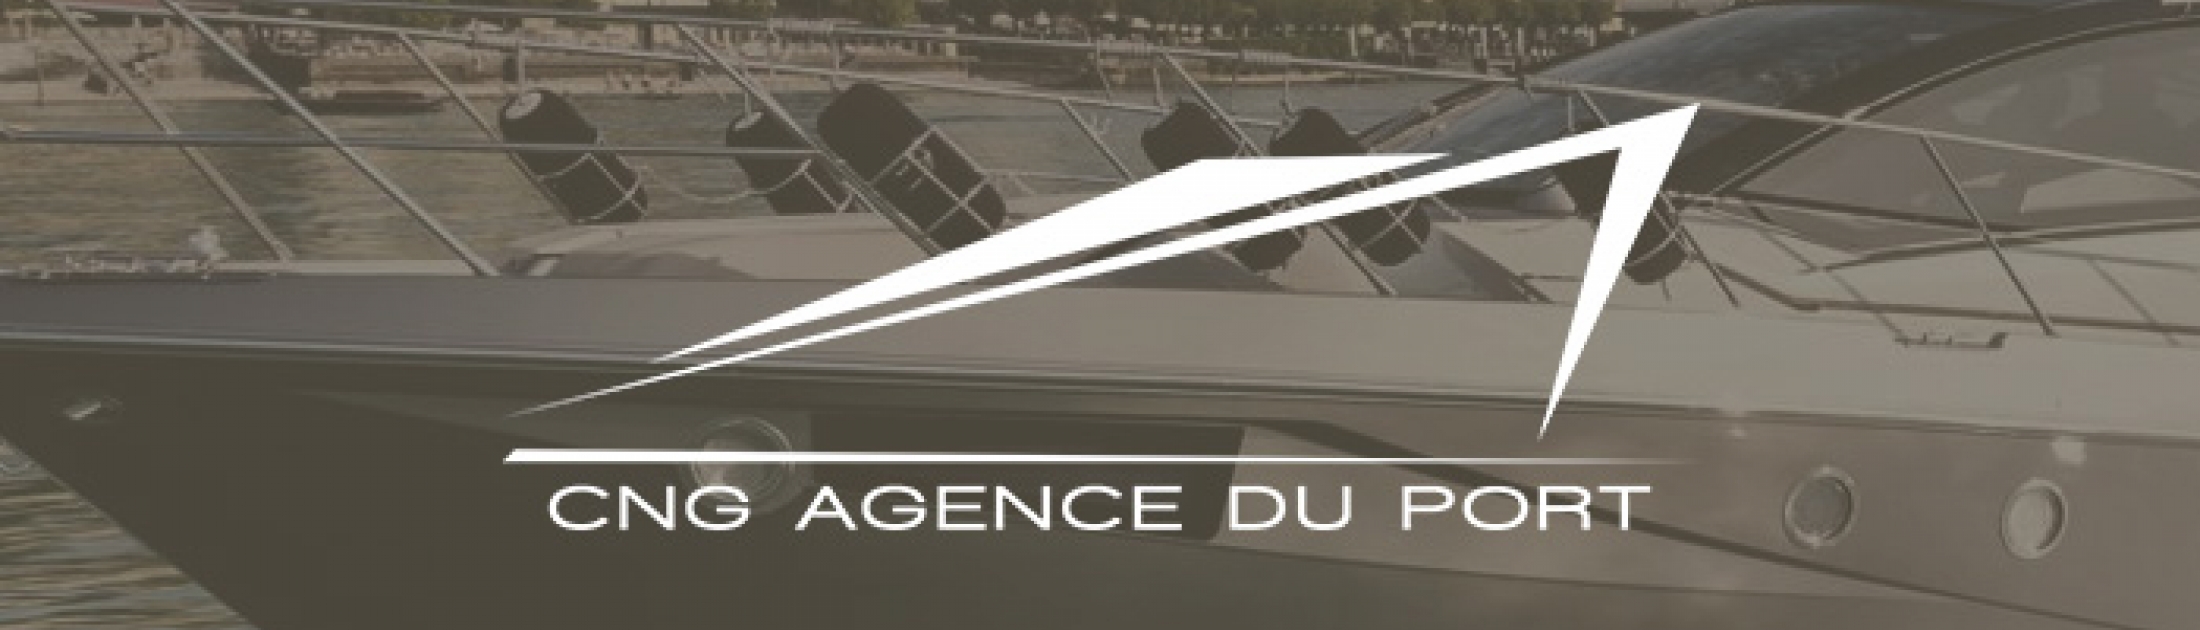 CNG Agence du port